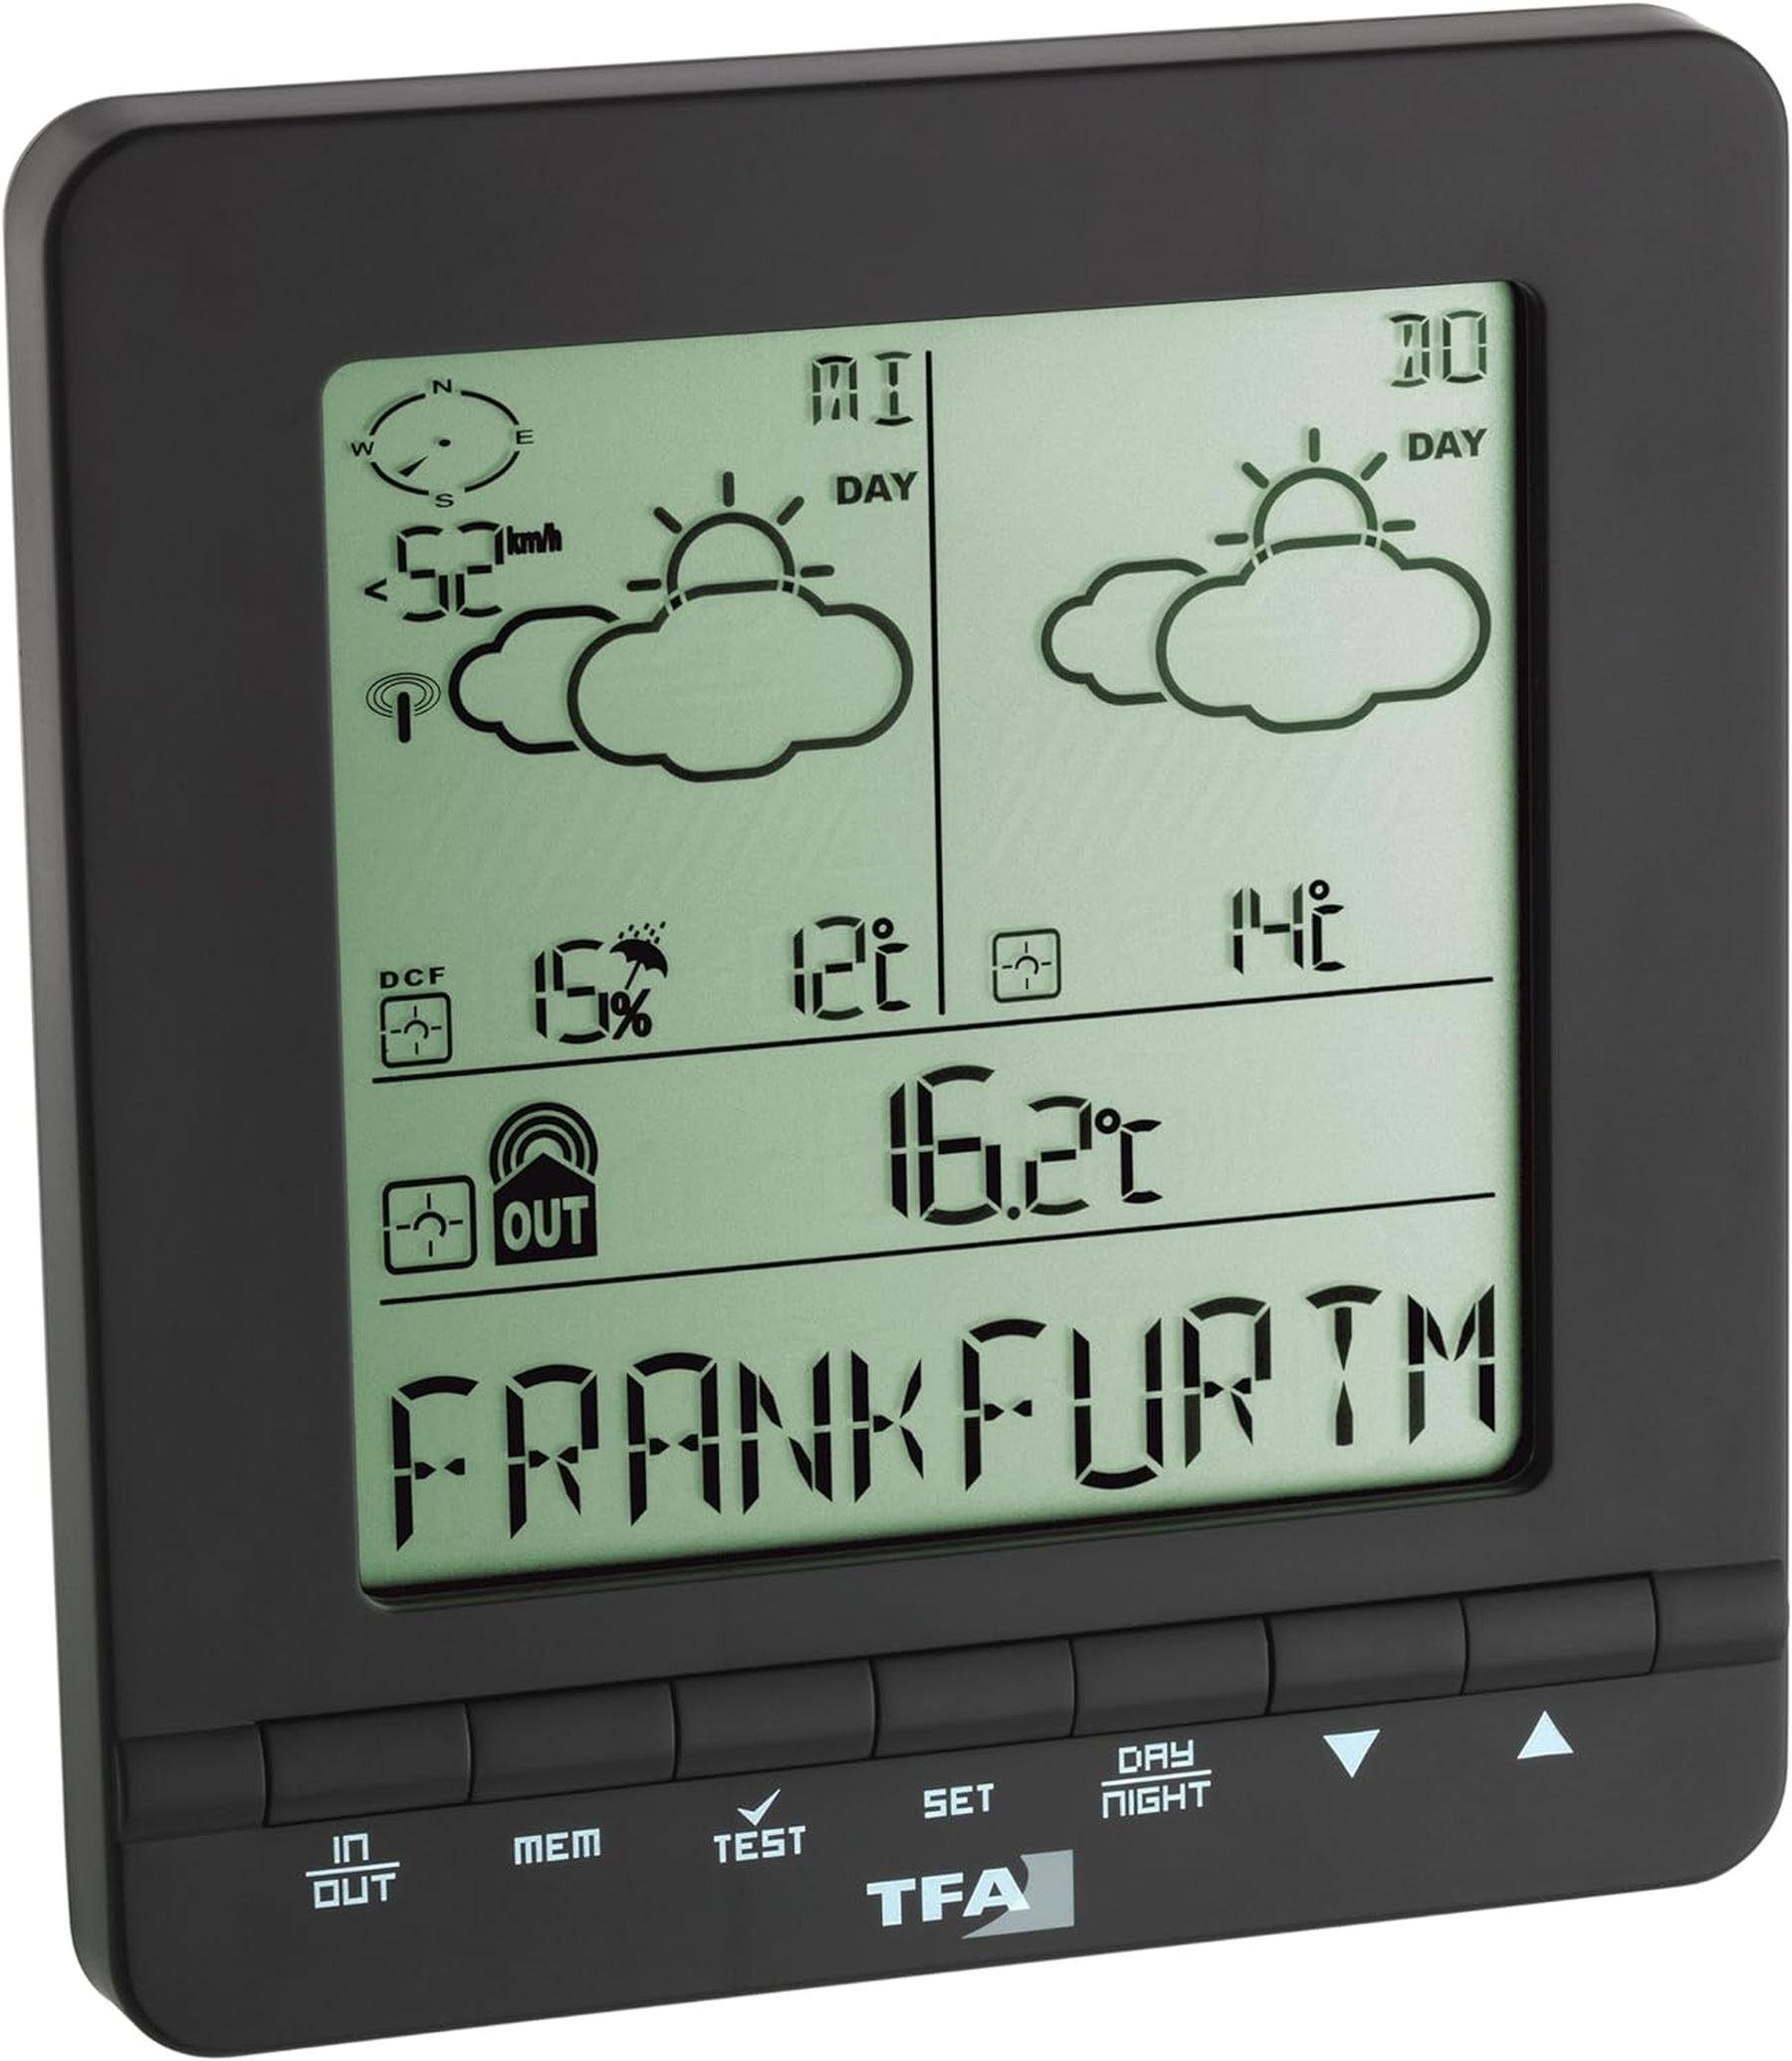 Tfa TFA Dostmann Meteotime Easy Wetter Info Center und Außentemperatur Wetterstation (Digitales Display, Drahtlos, Funkübertragung)